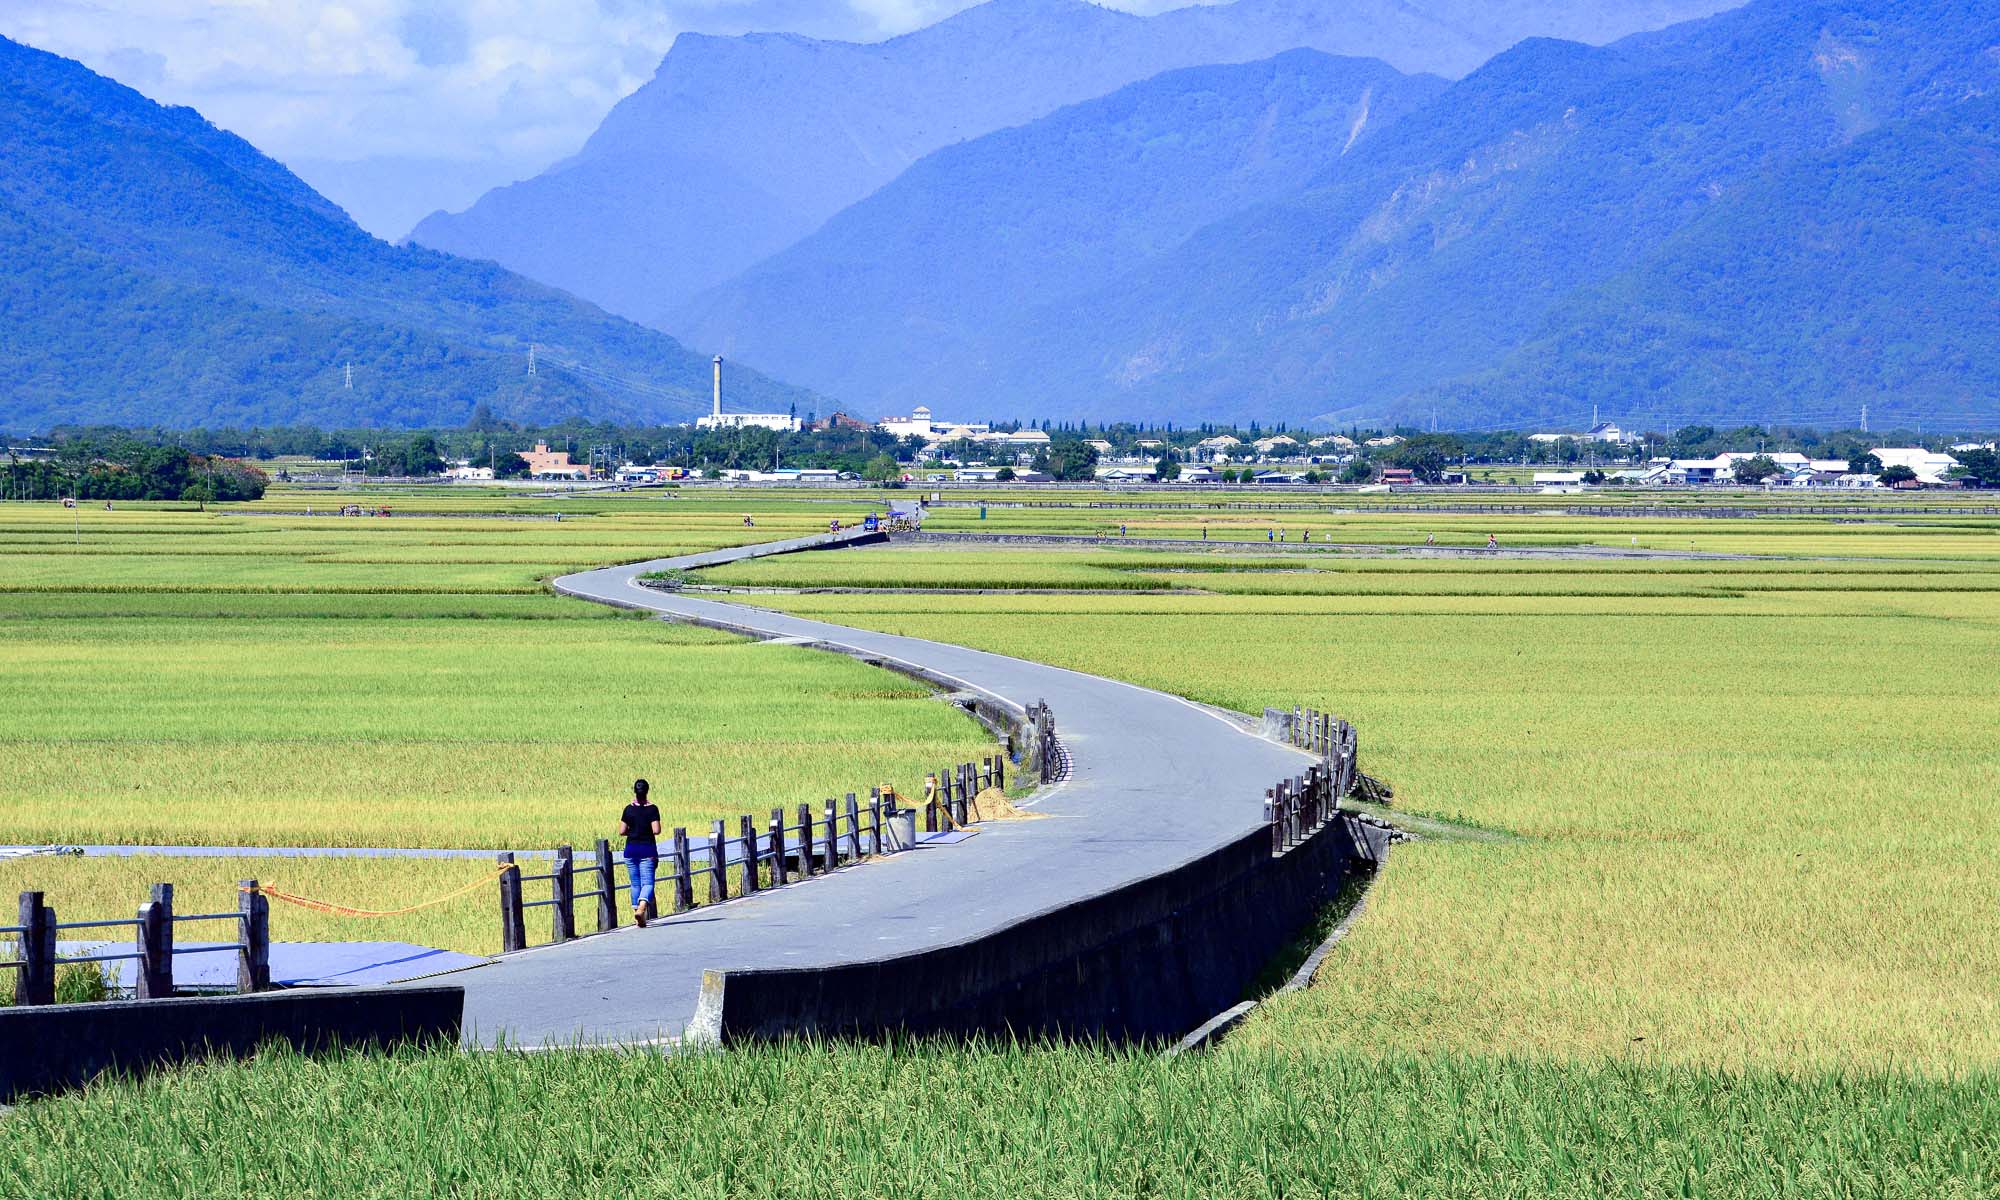 Quiet roads stretching through rice fields.